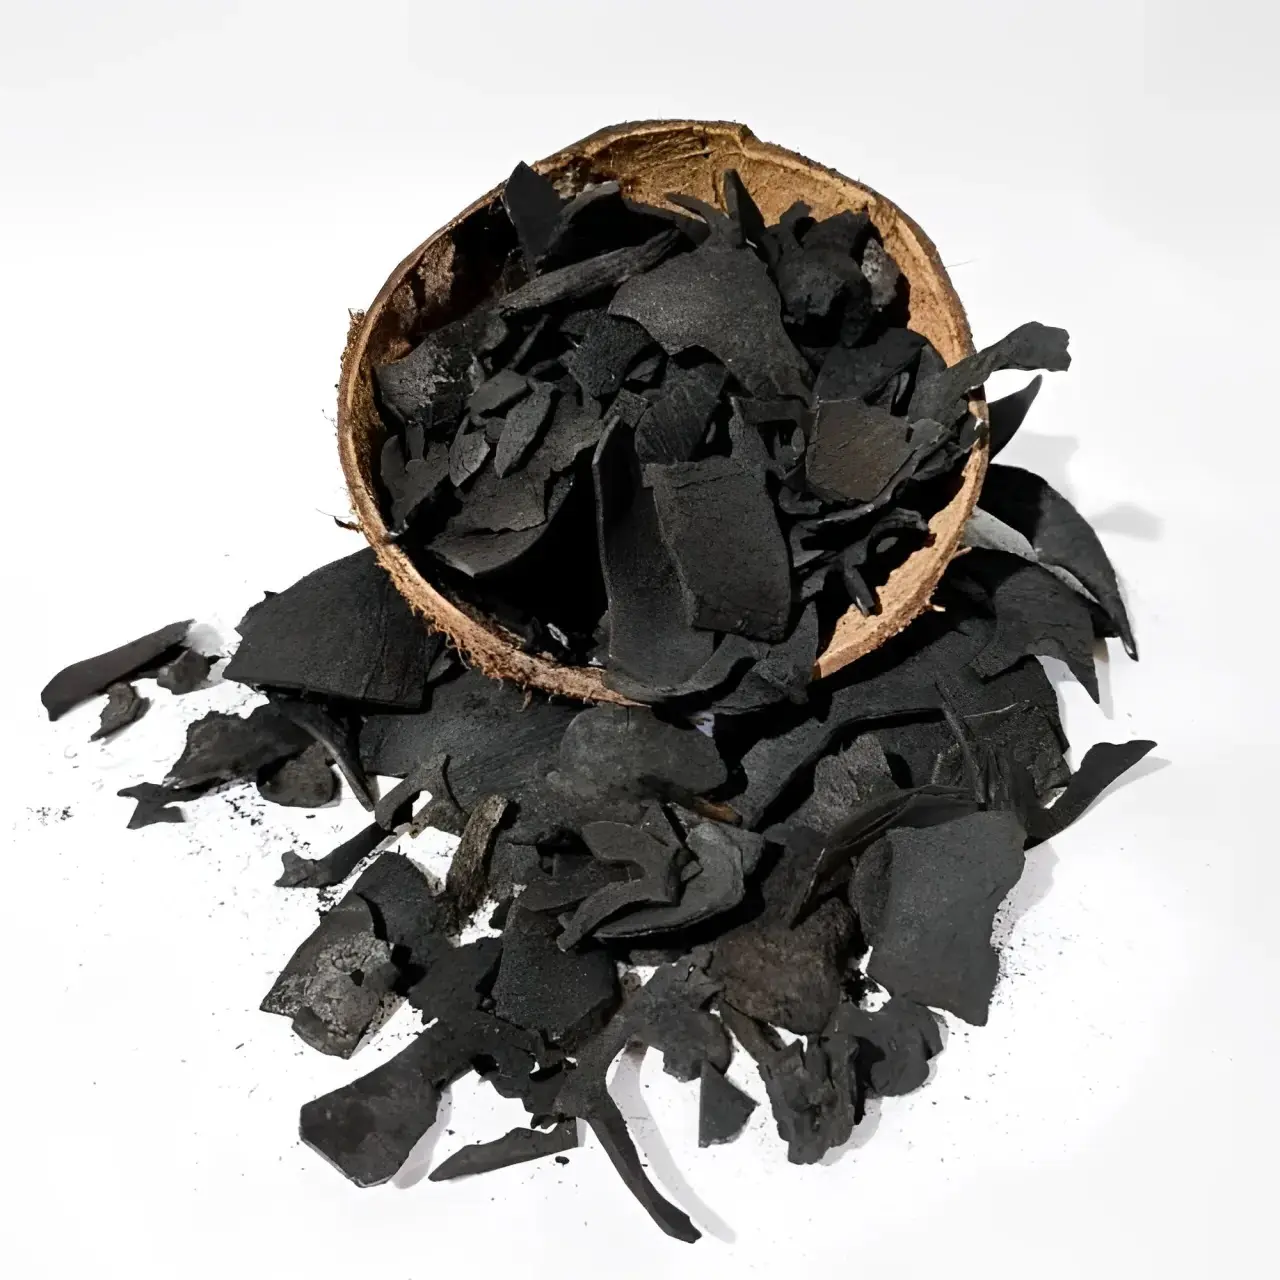 אנרגיה שחור צורת גוש ספק פחם פעיל מחיר באיכות גבוהה פחם מעטפת קוקוס תוצרת אינדונזיה